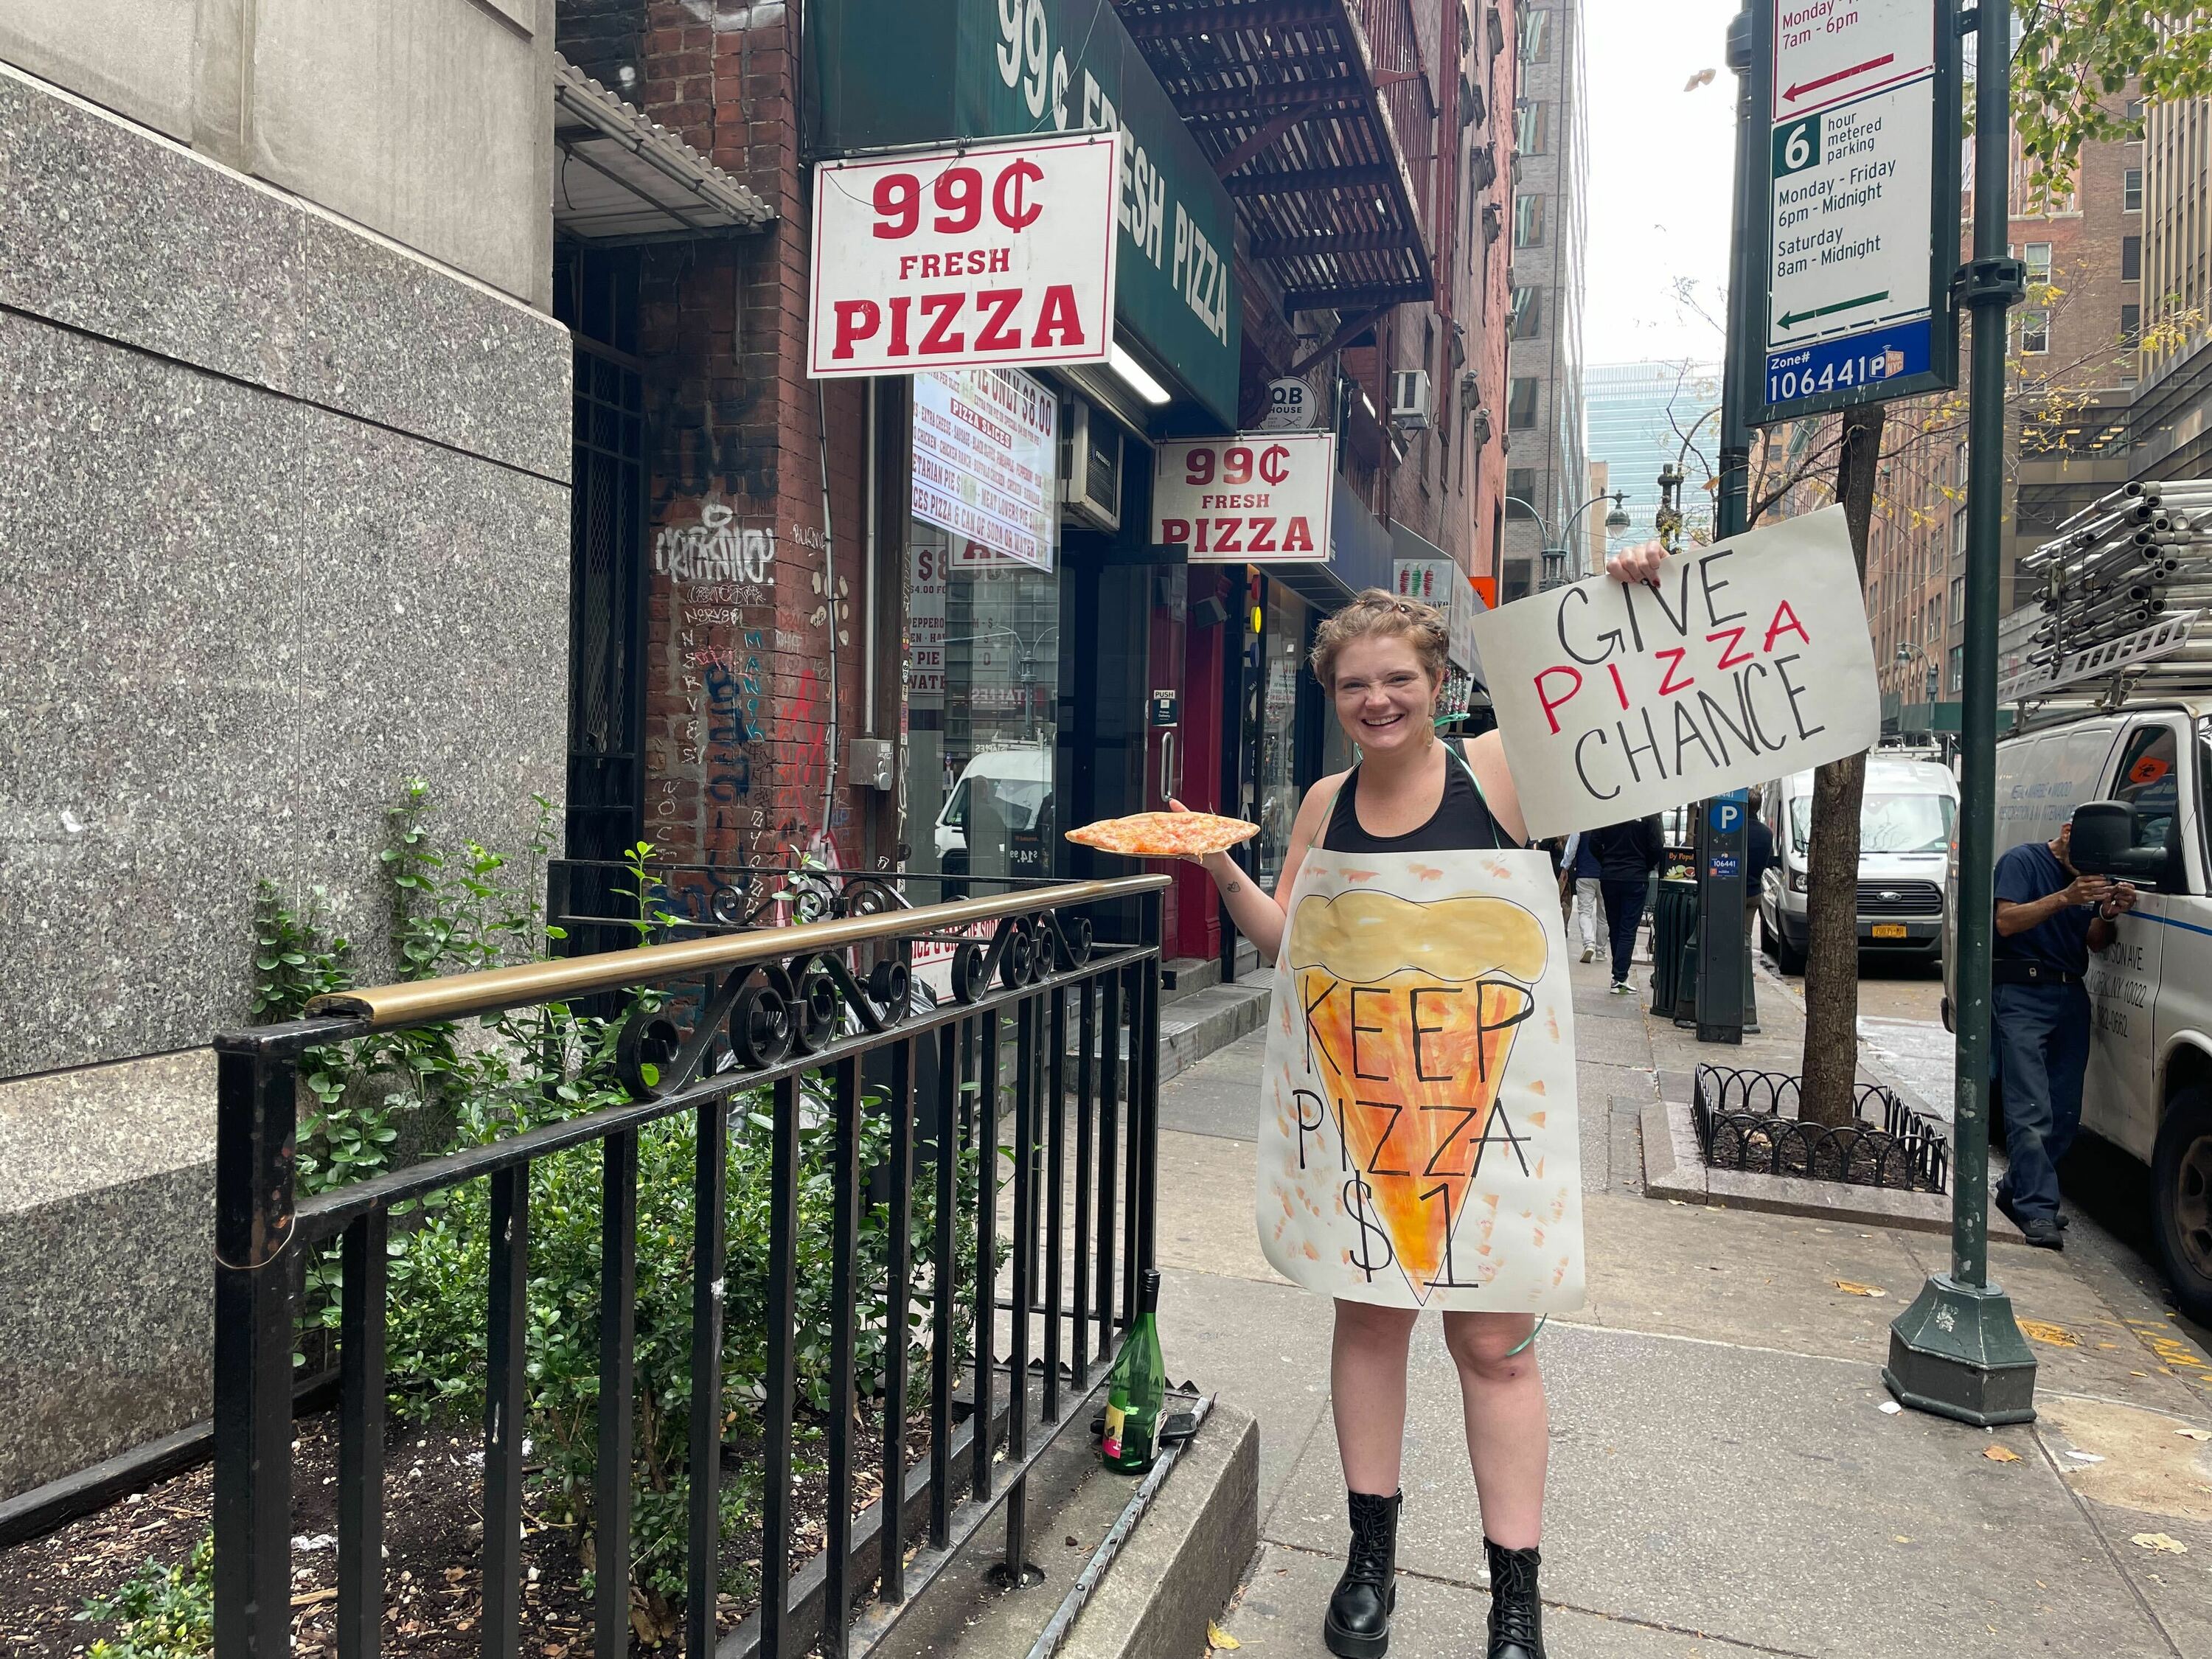 A woman wears a sandwich board reading "Keep Pizza $1." 